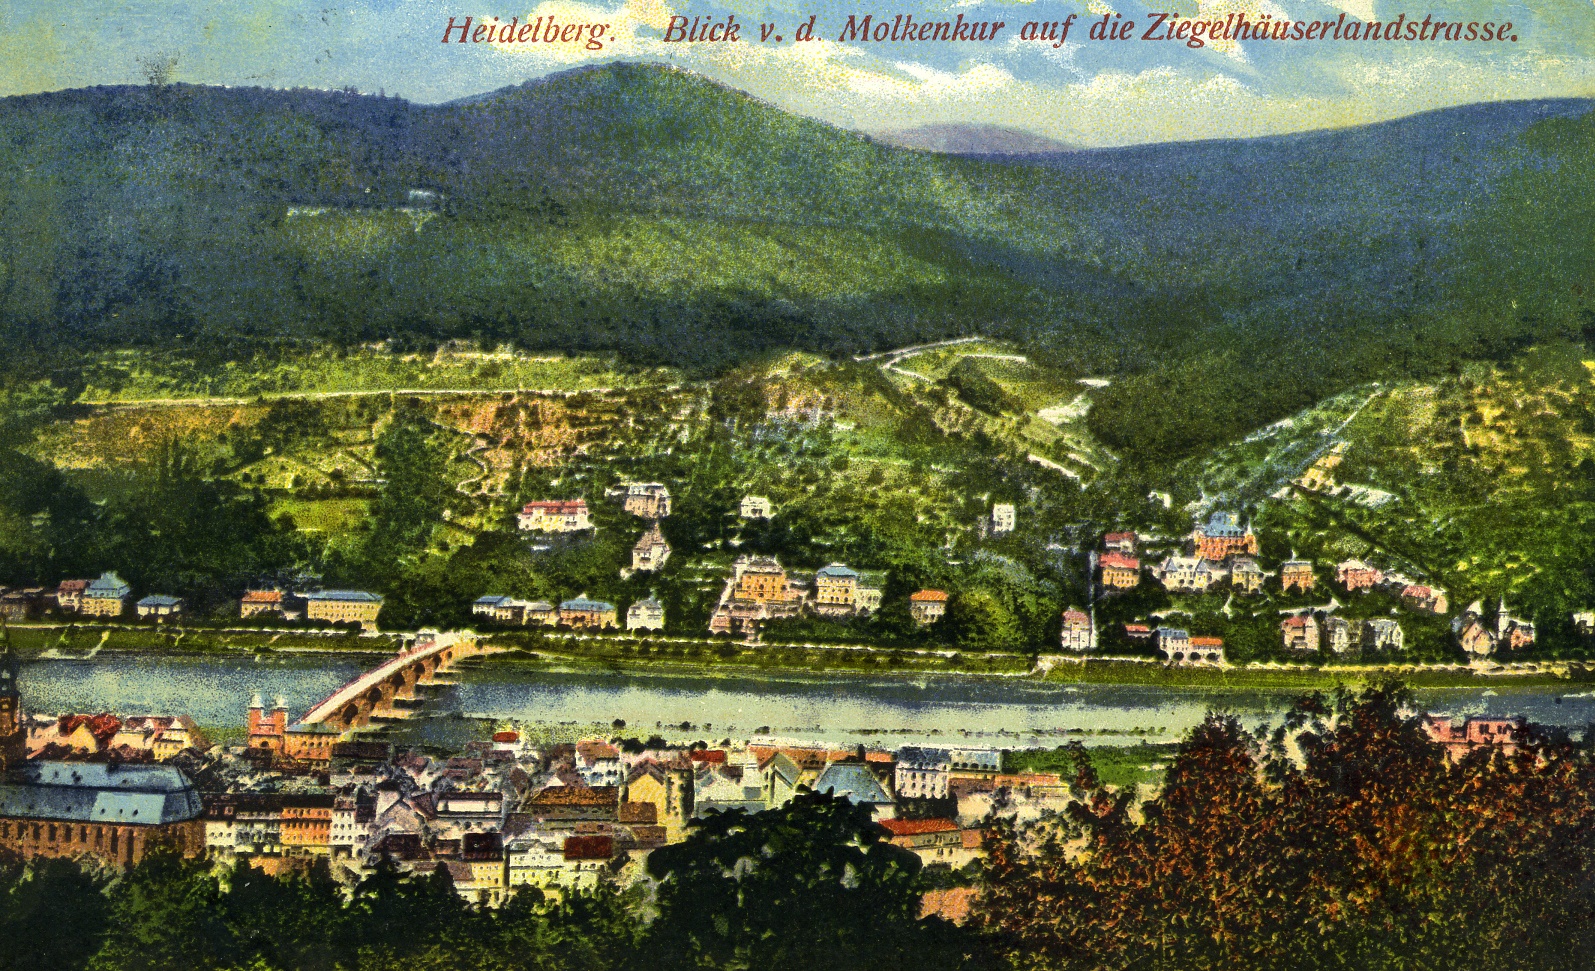 Feldpostkarte aus Heidelberg 1916 (Historisches Museum der Pfalz, Speyer CC BY)